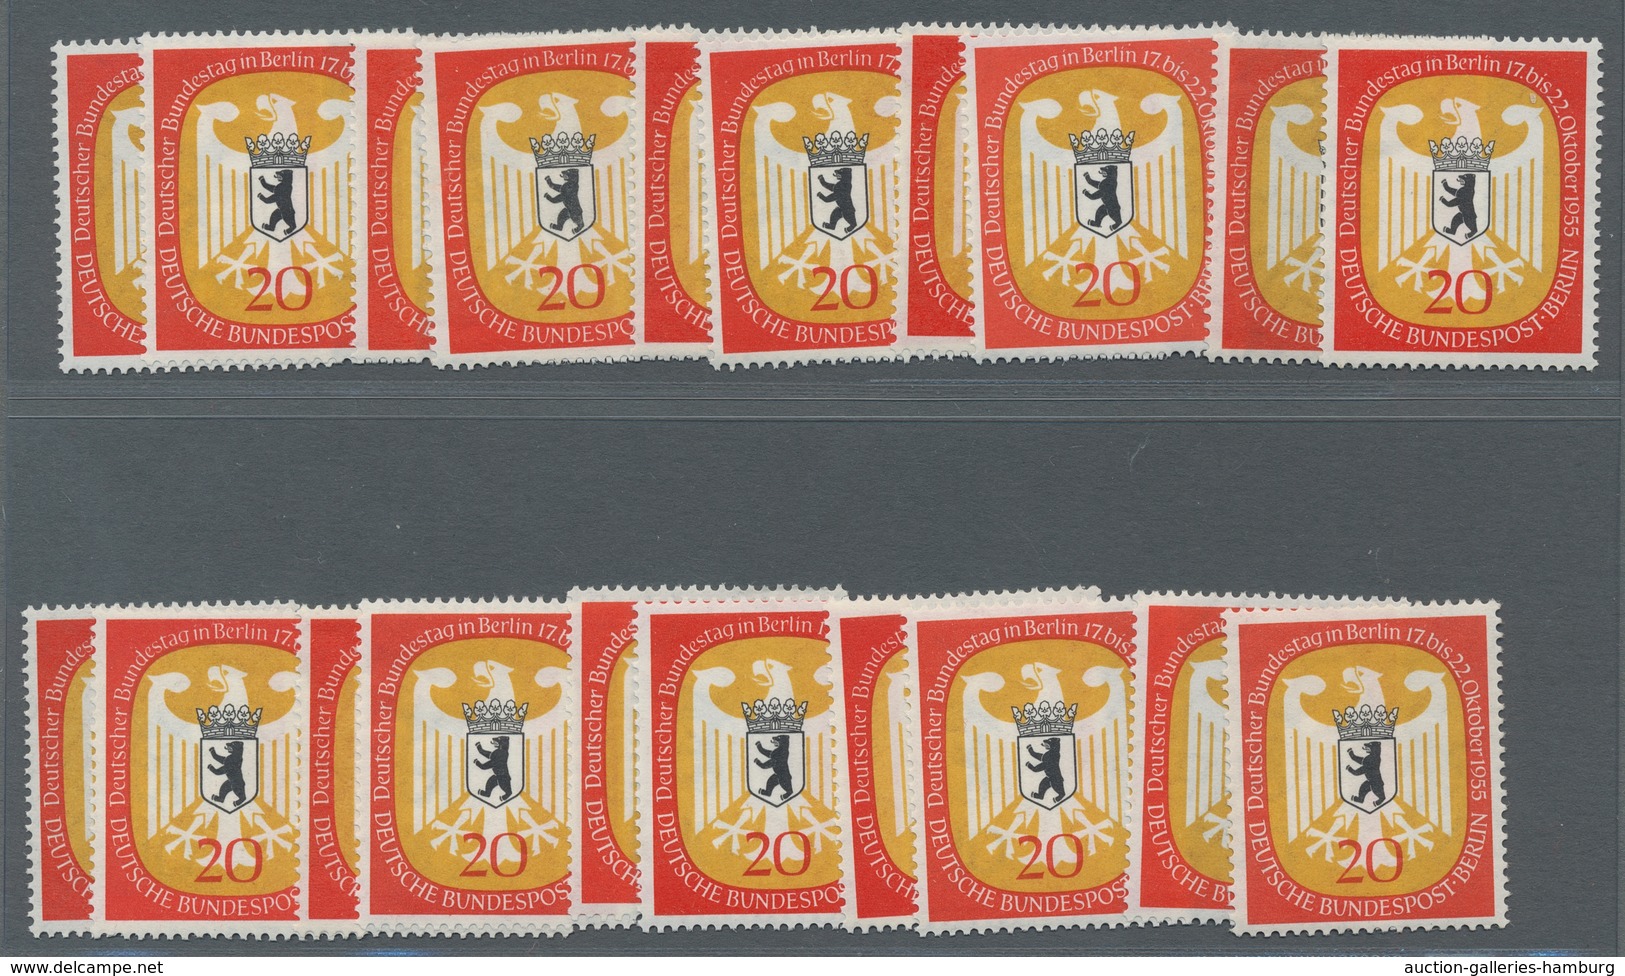 Berlin: 1954/1955 Nationale Postwertzeichenausstellung und Strauß bis Bistum Berlin je zehnmal postf